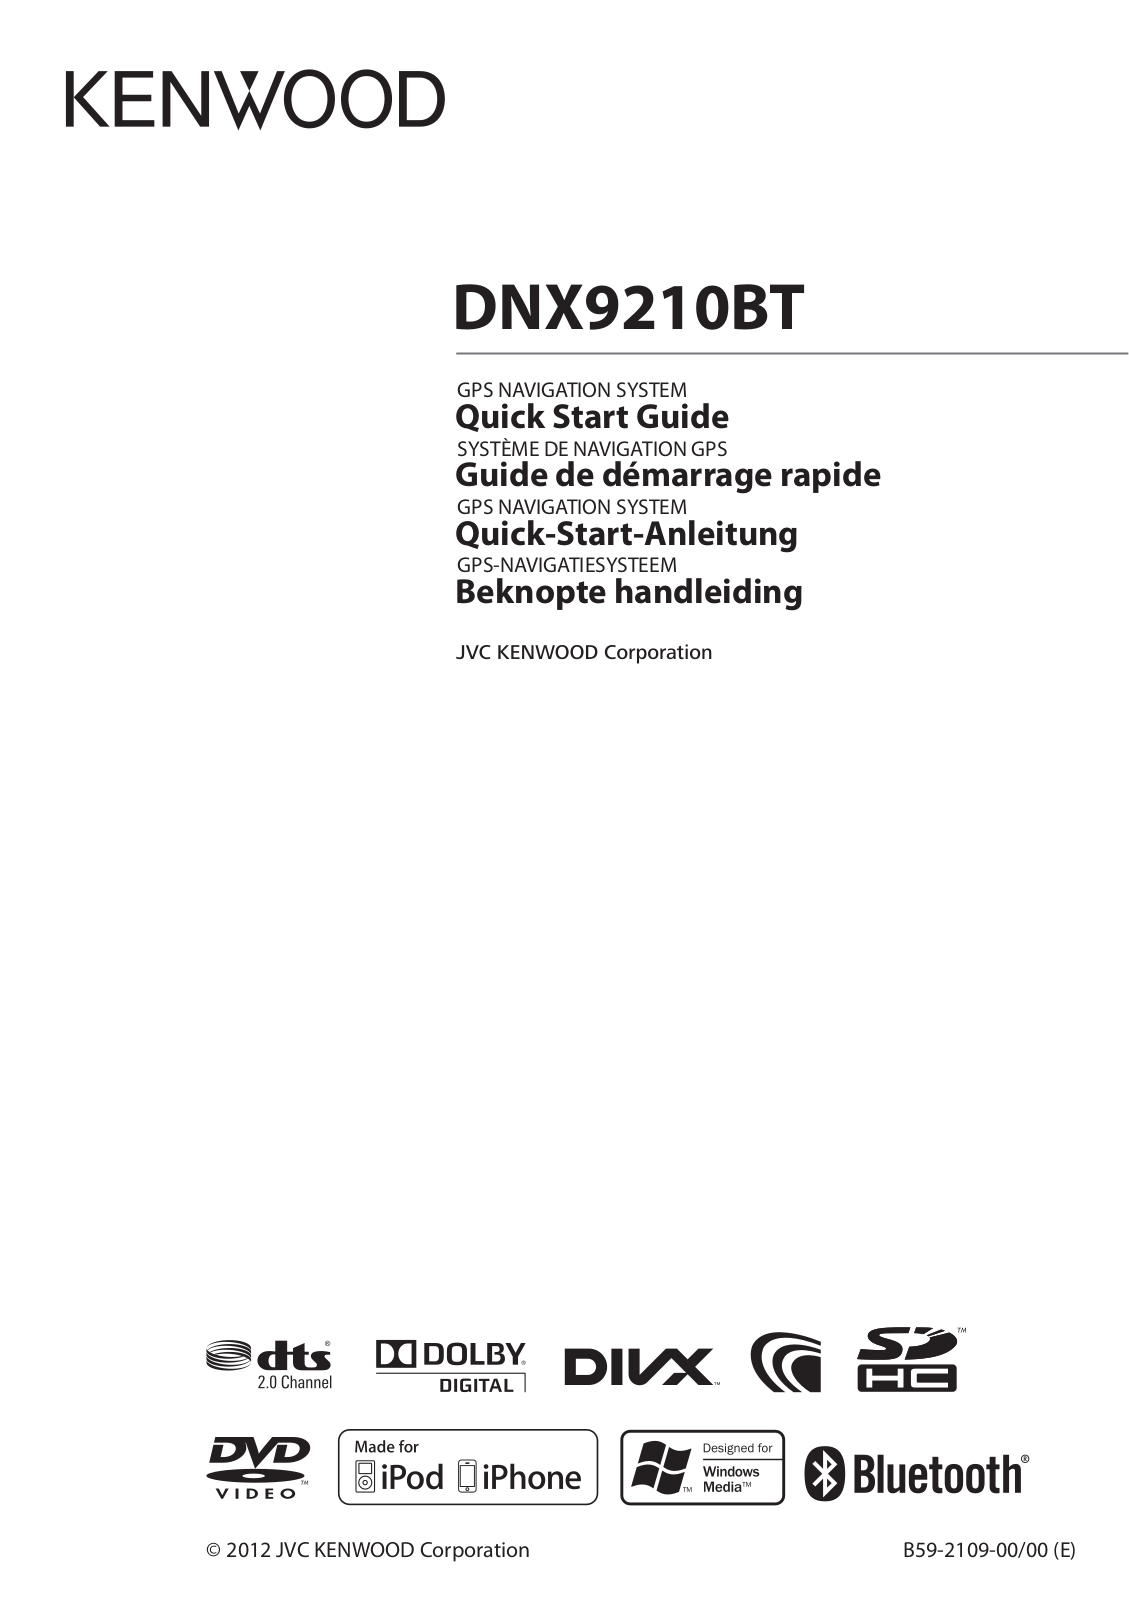 Kenwood DNX9120BT Quick Start Guide